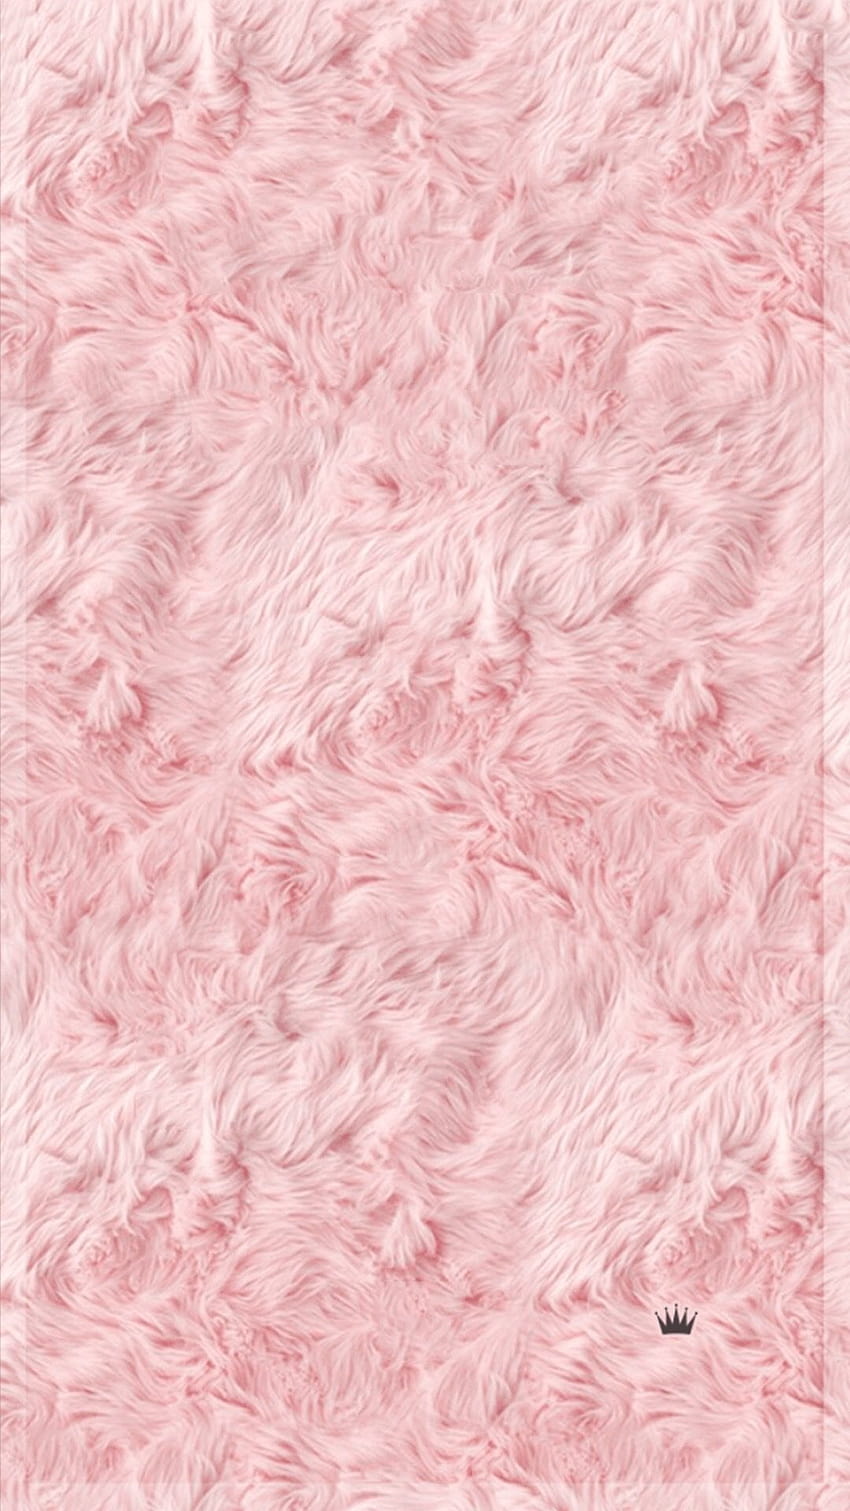 Pink Fur diposting oleh Ryan Cunningham, selimut pink wallpaper ponsel HD